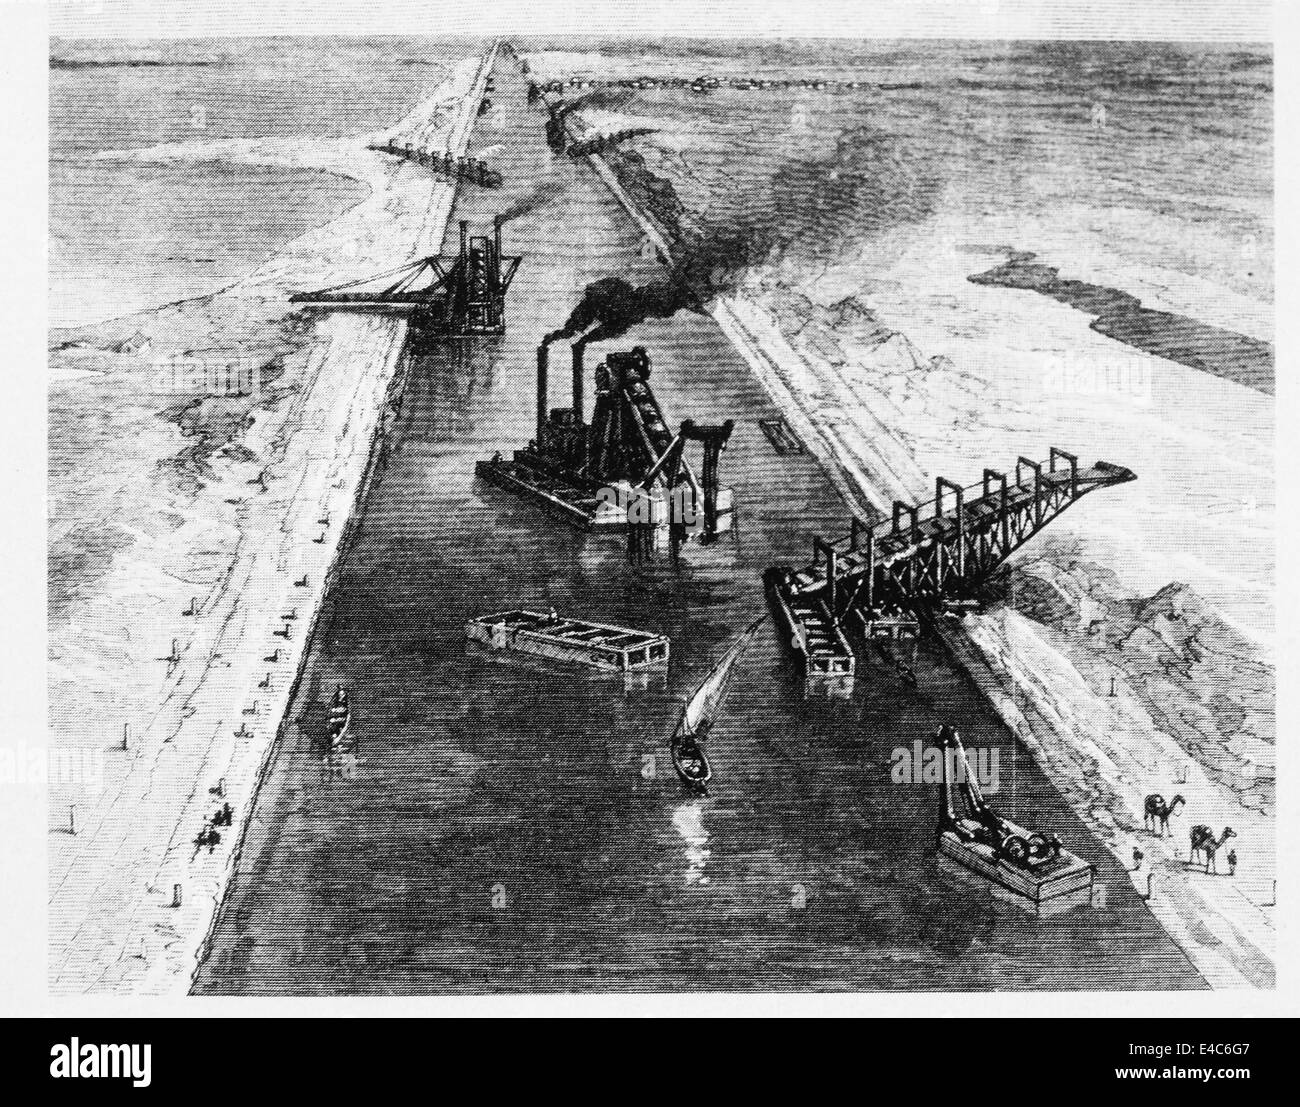 Le dragage du canal de Suez, l'Egypte, de l'illustration, Juillet 1869 Banque D'Images